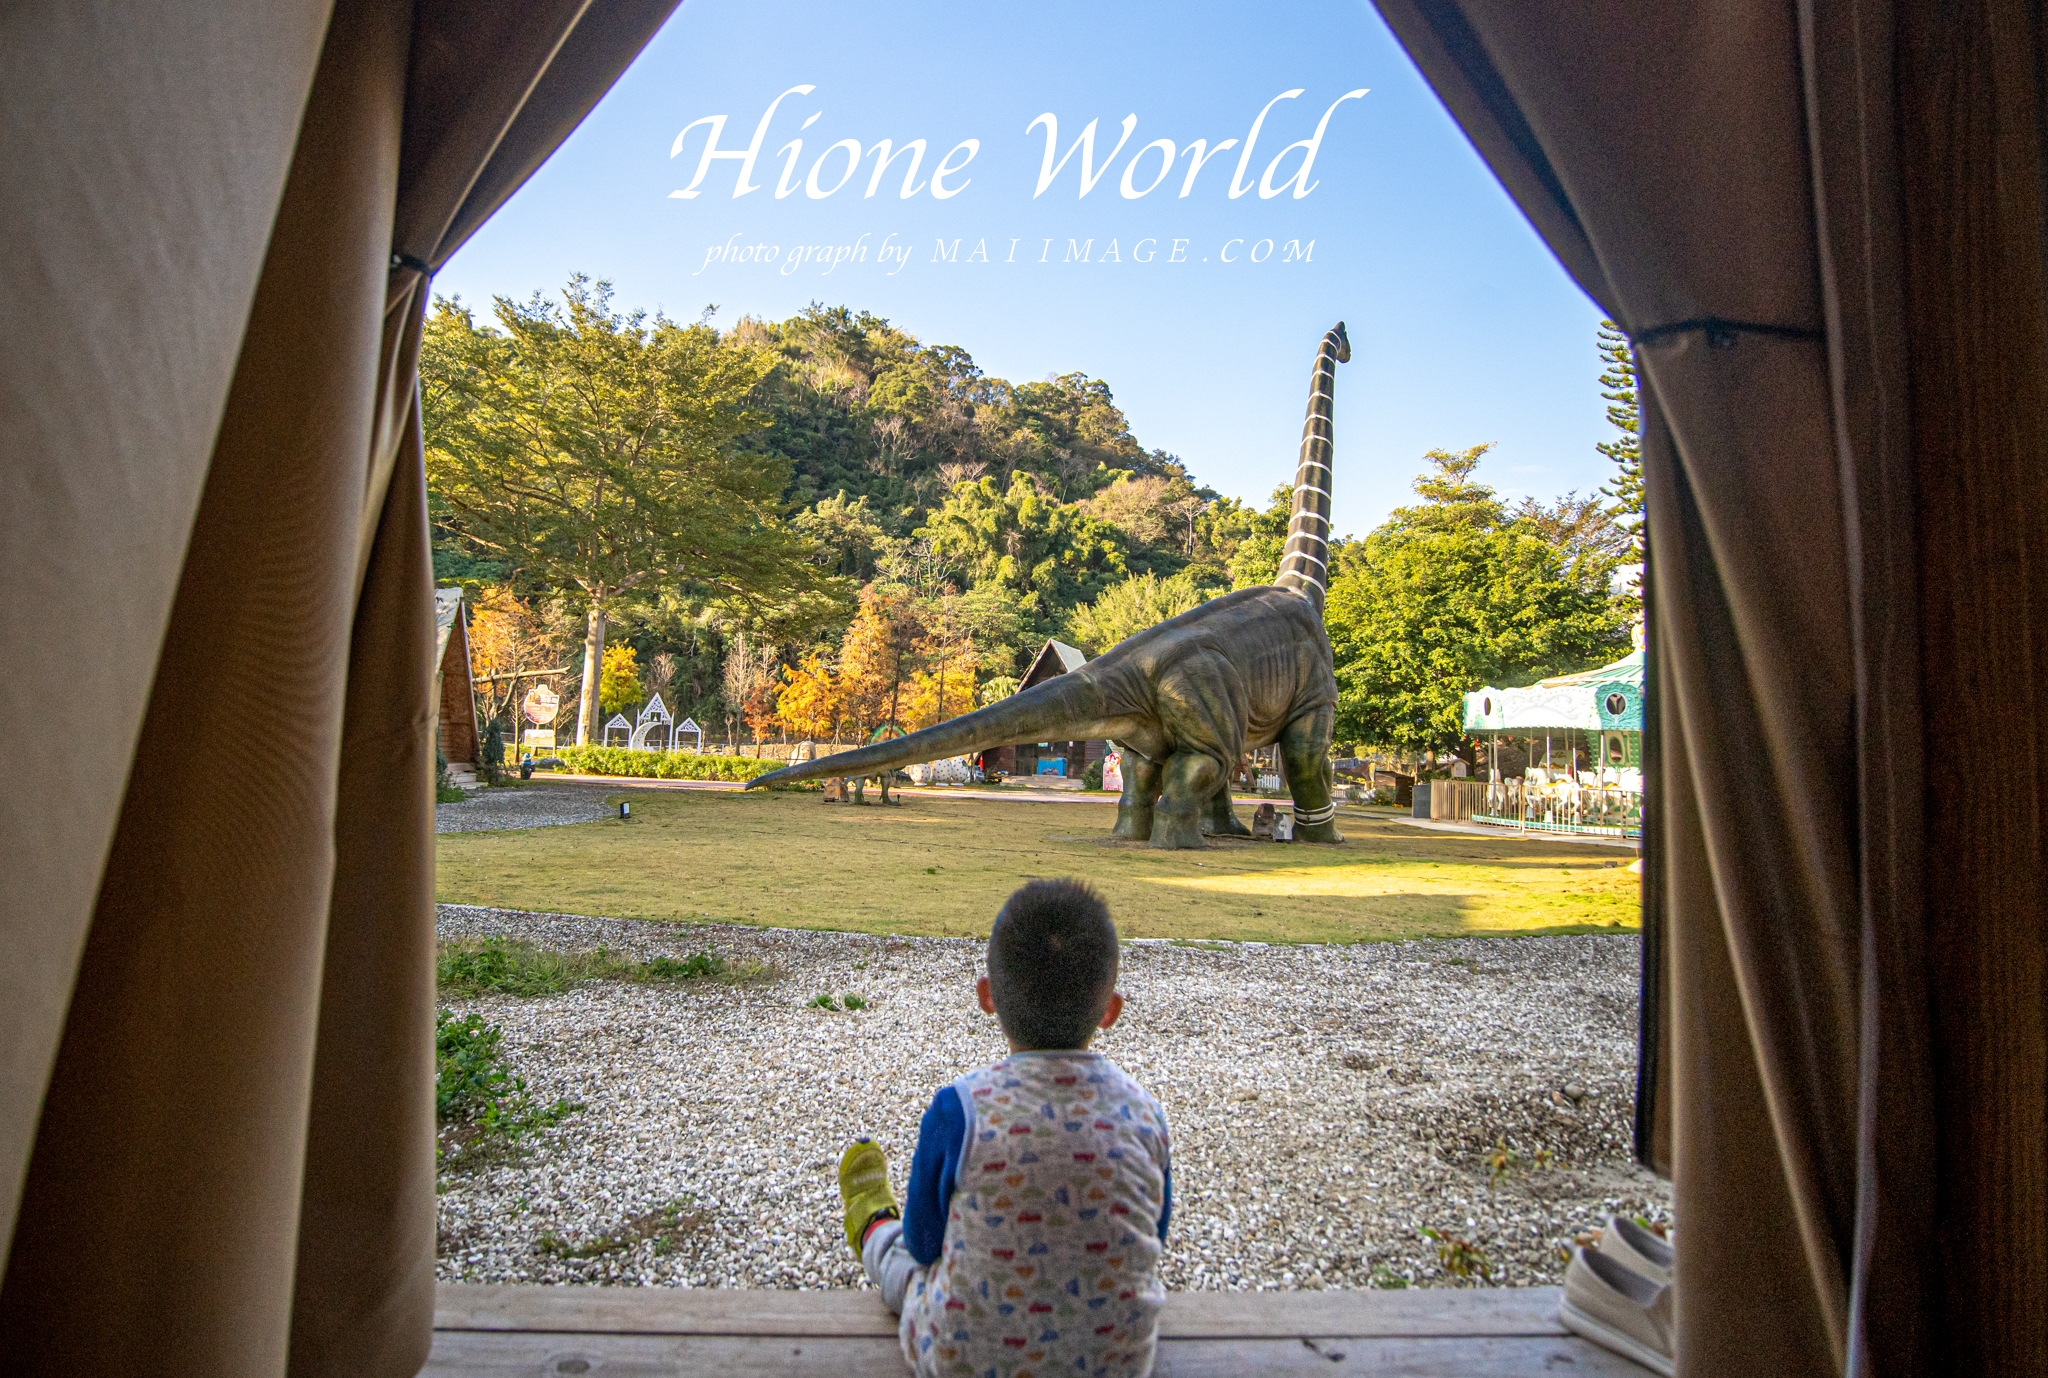 親子旅遊推薦｜全台最吸睛的恐龍主題樂園，海灣樂世界波比星球Hione World，住合掌屋一秒到日本，享受開門就是巨型恐龍的樂趣！親子旅遊、寵物友善空間